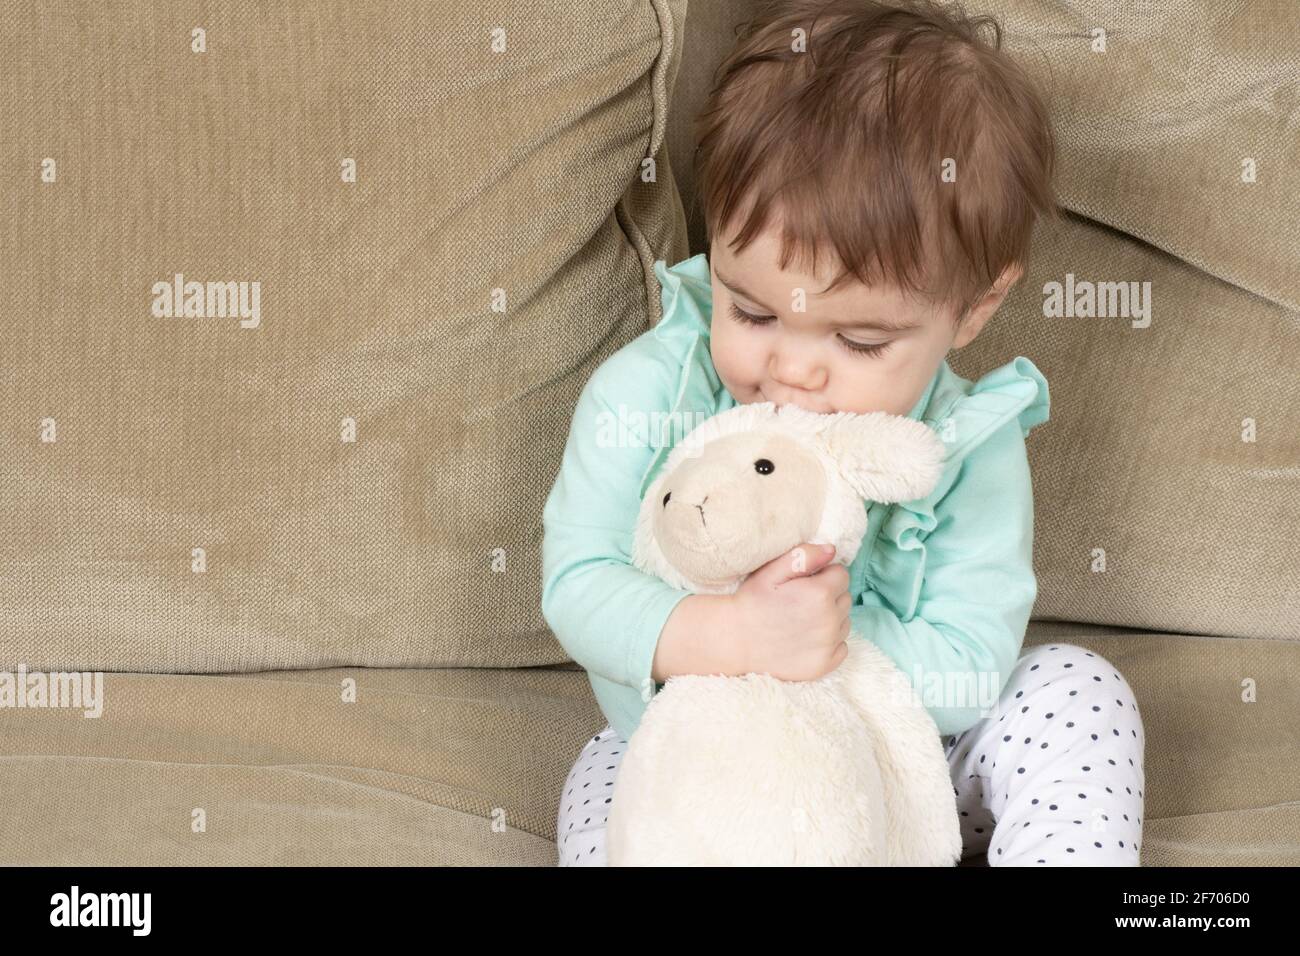 10 Monate altes Baby Mädchen umarmt Lieblings ausgestopftes Tier Lamm Spielzeug Stockfoto